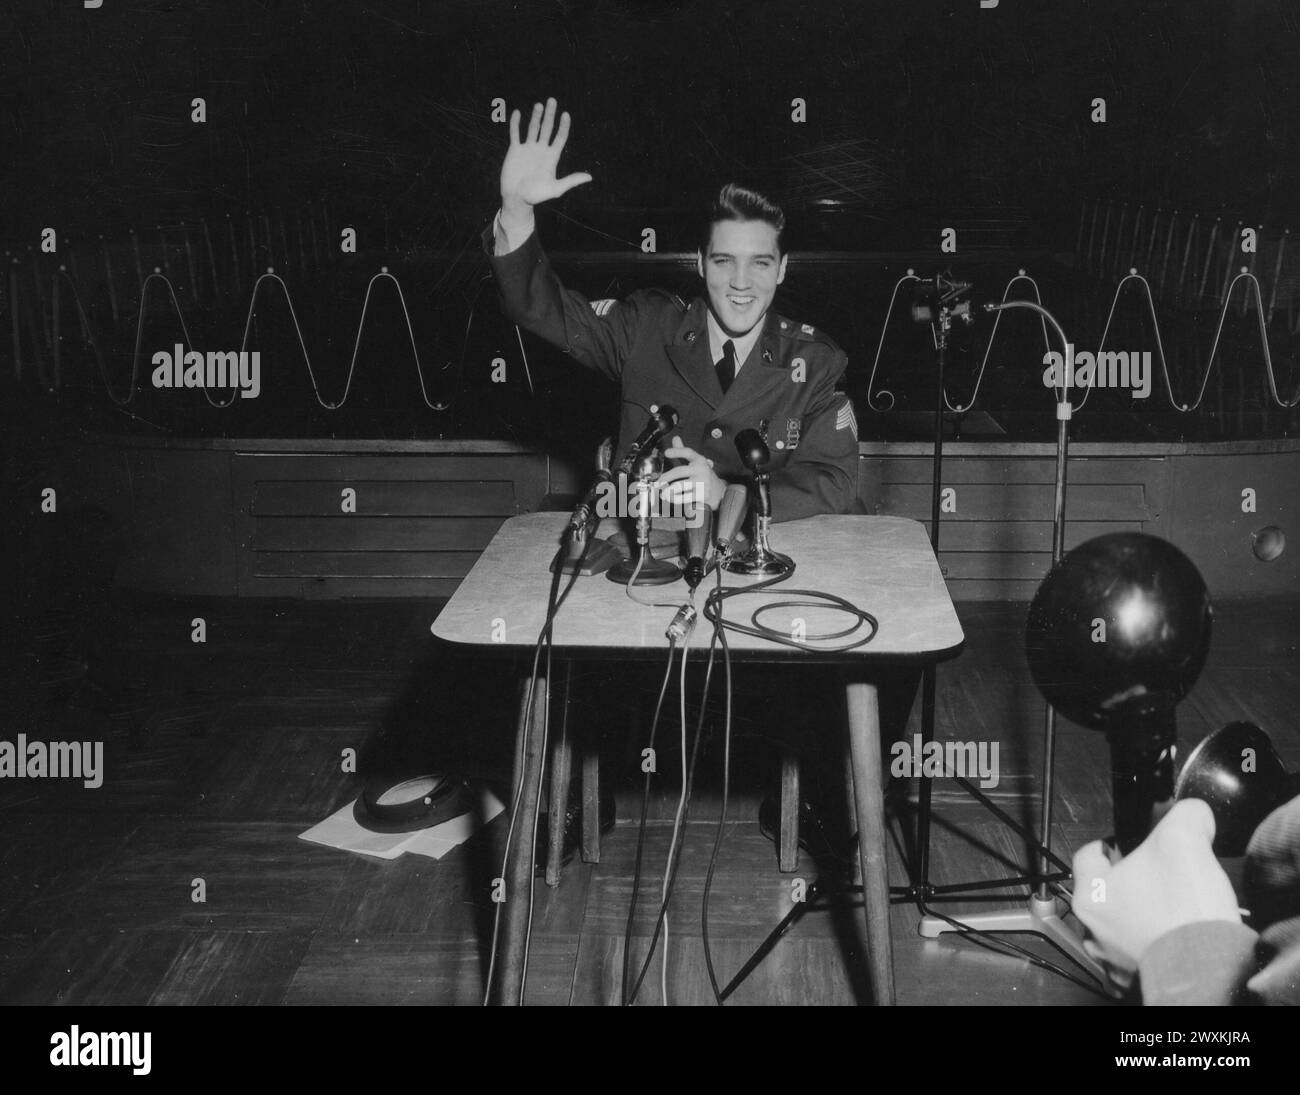 Le Sgt Elvis A. Presley, 32e blindé, 3e Division blindée, Friedberg, dans la vie civile une star du disque et du cinéma, donne sa dernière conférence de presse, en Allemagne avant de retourner aux États-Unis et à la vie civile, dans le club des hommes enrôlés, Ray Barracks CA. Mars 1960 Banque D'Images